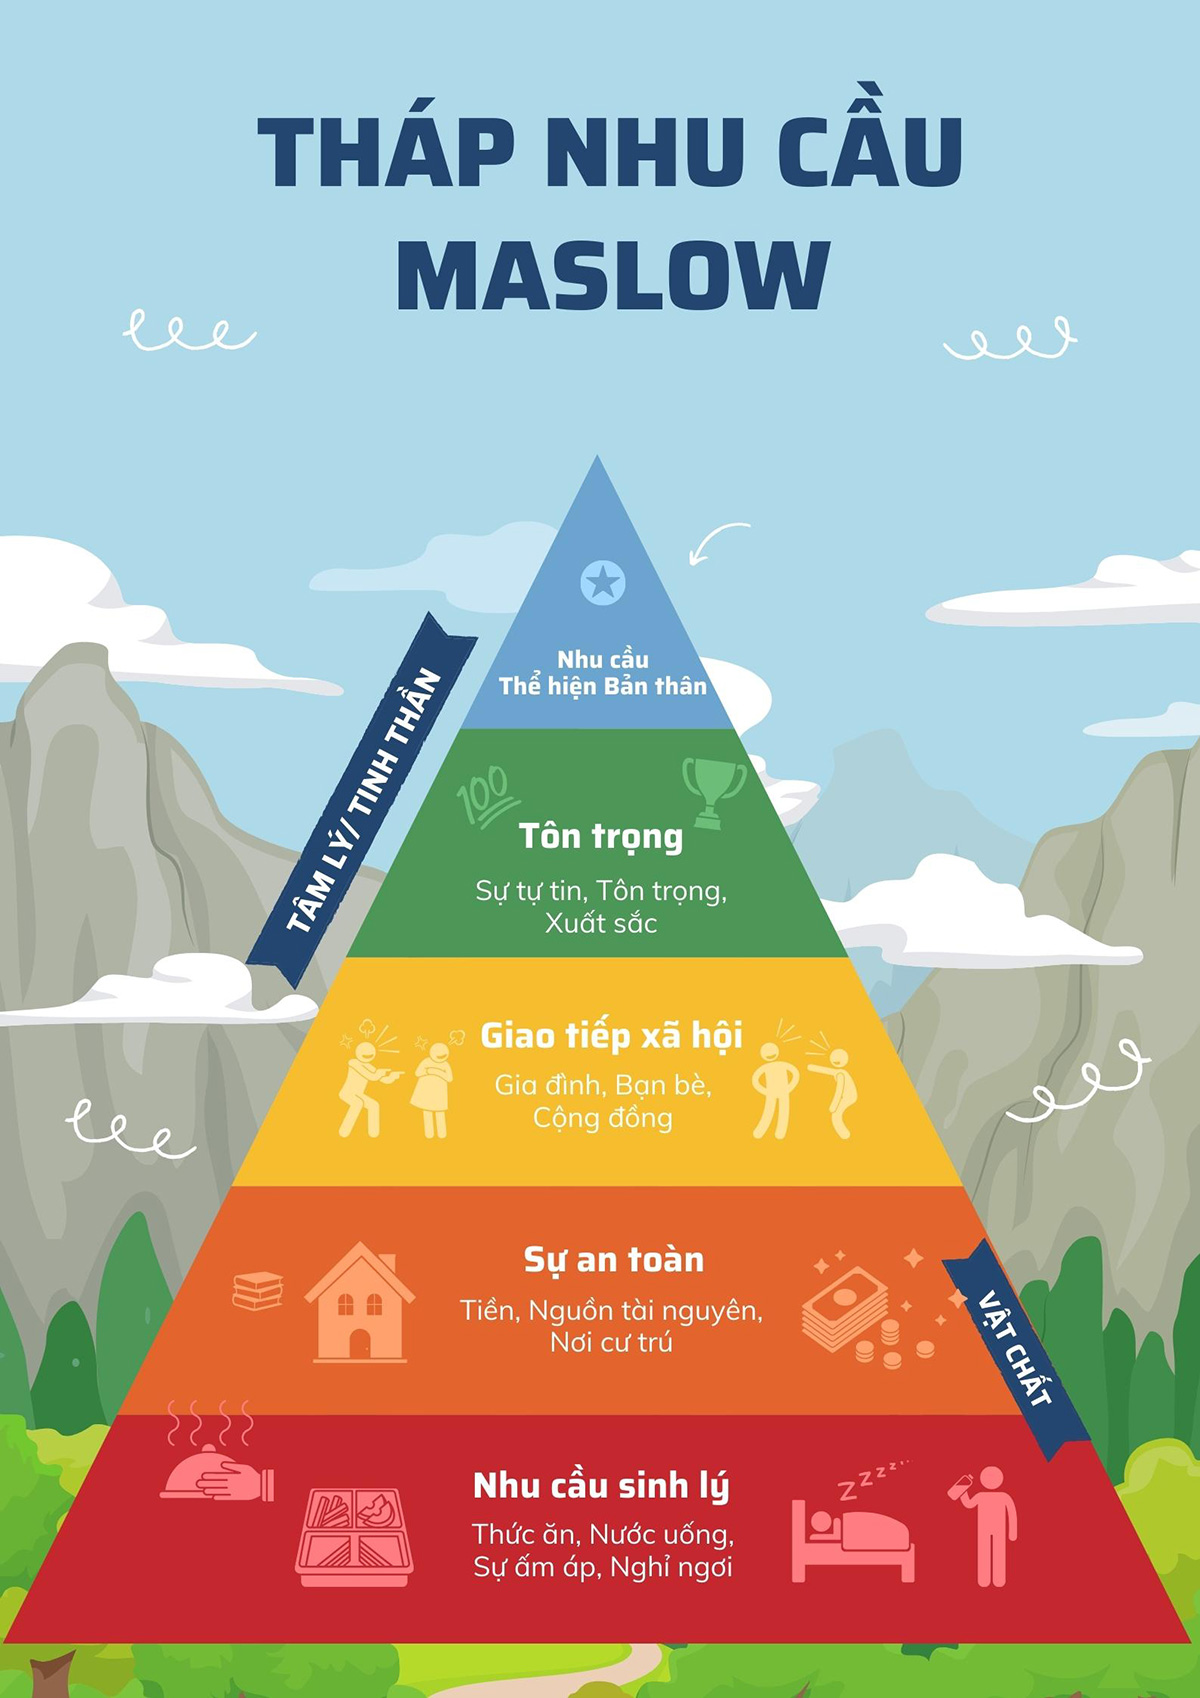 Tháp nhu cầu Maslow và 06 cách áp dụng trong kinh doanh  OMICall